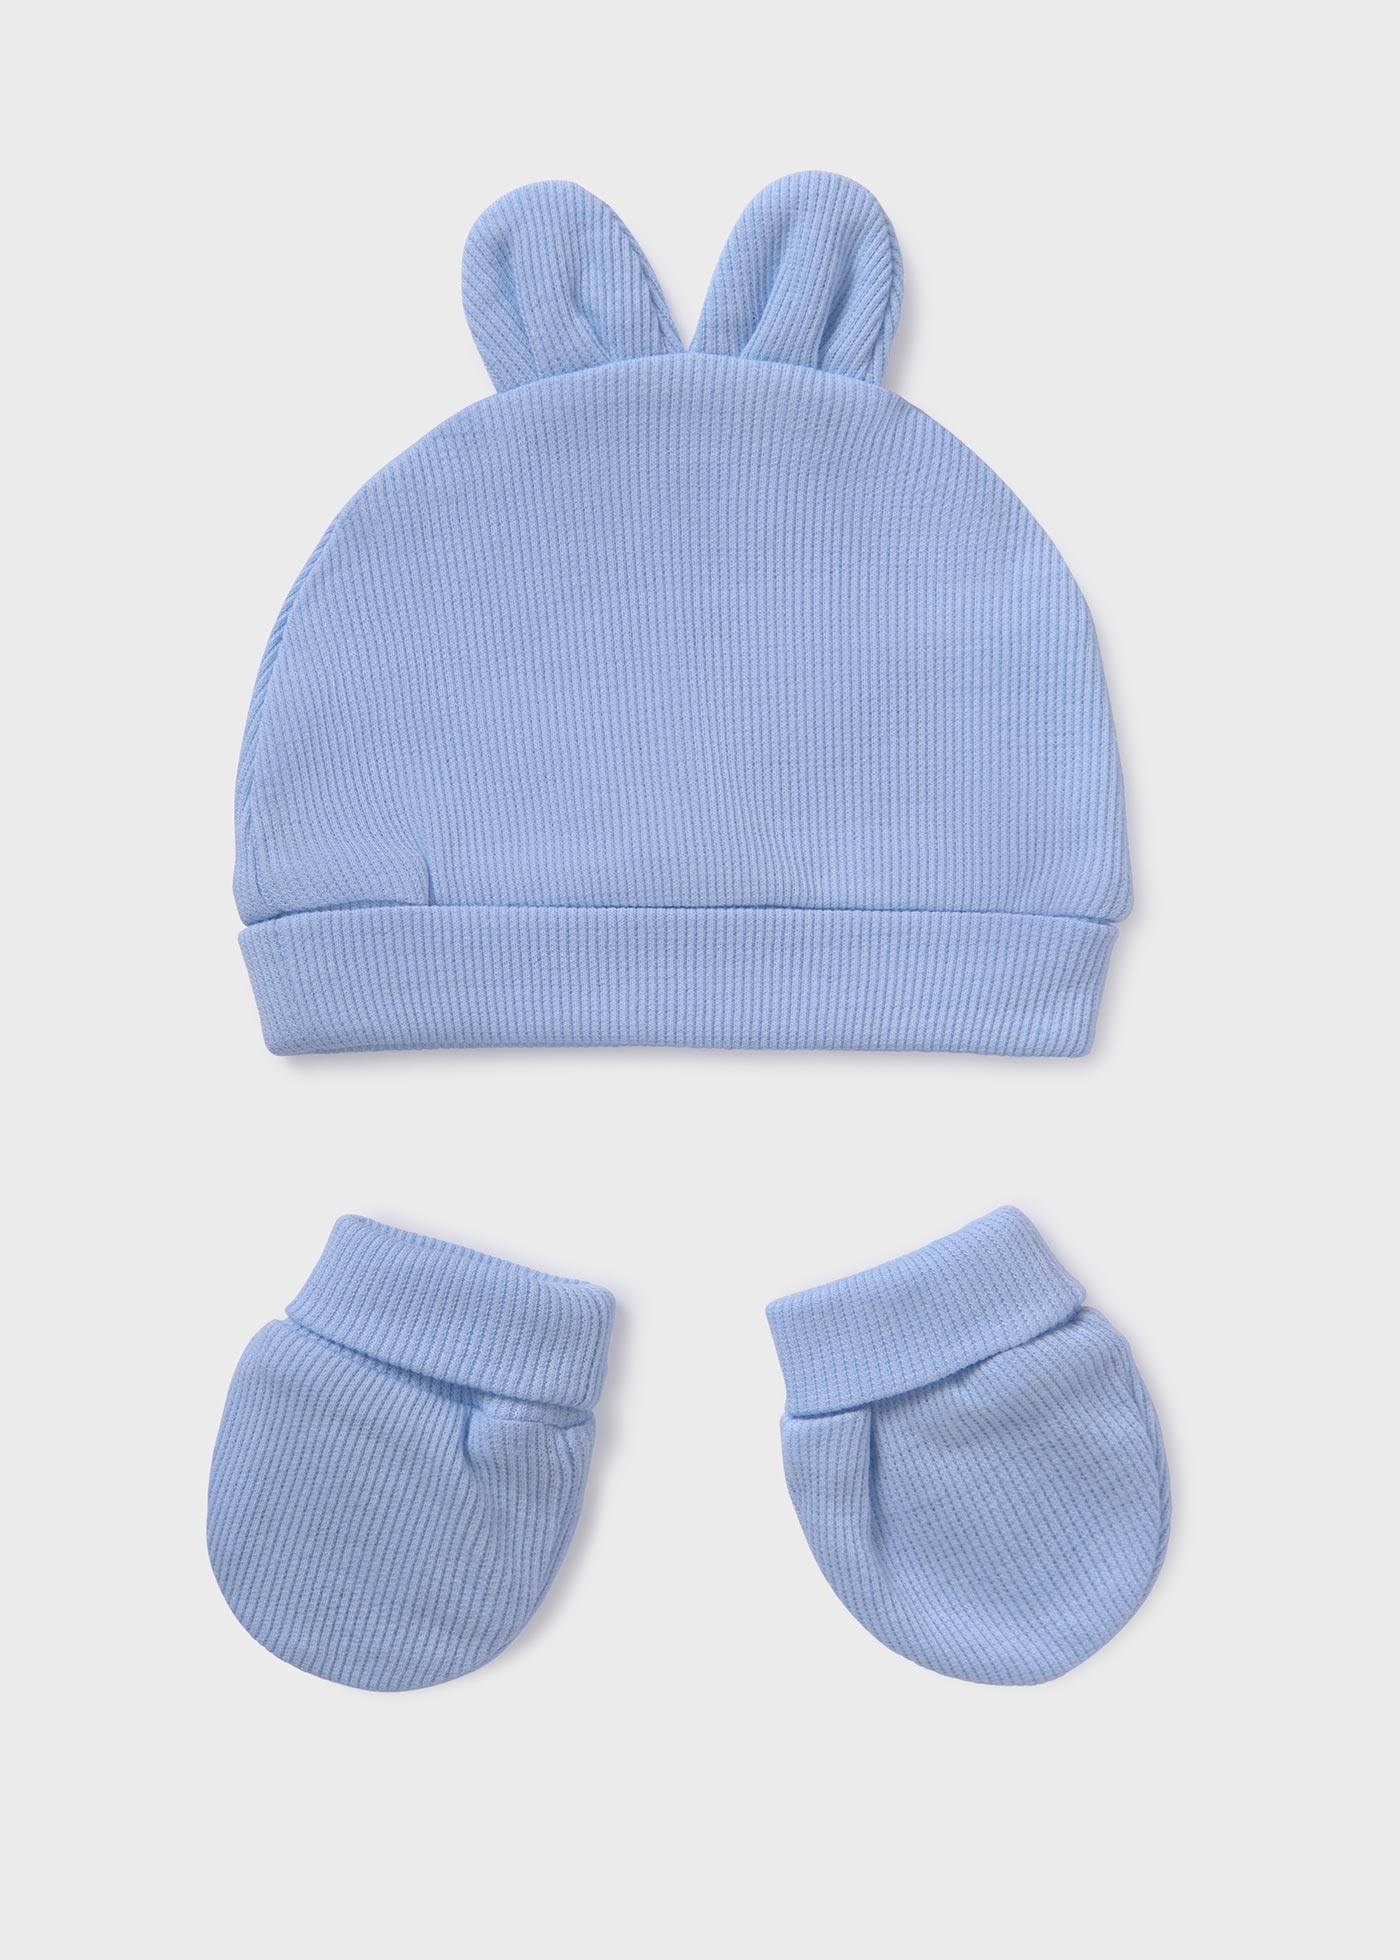 Completo cappello manopole Better Cotton neonato